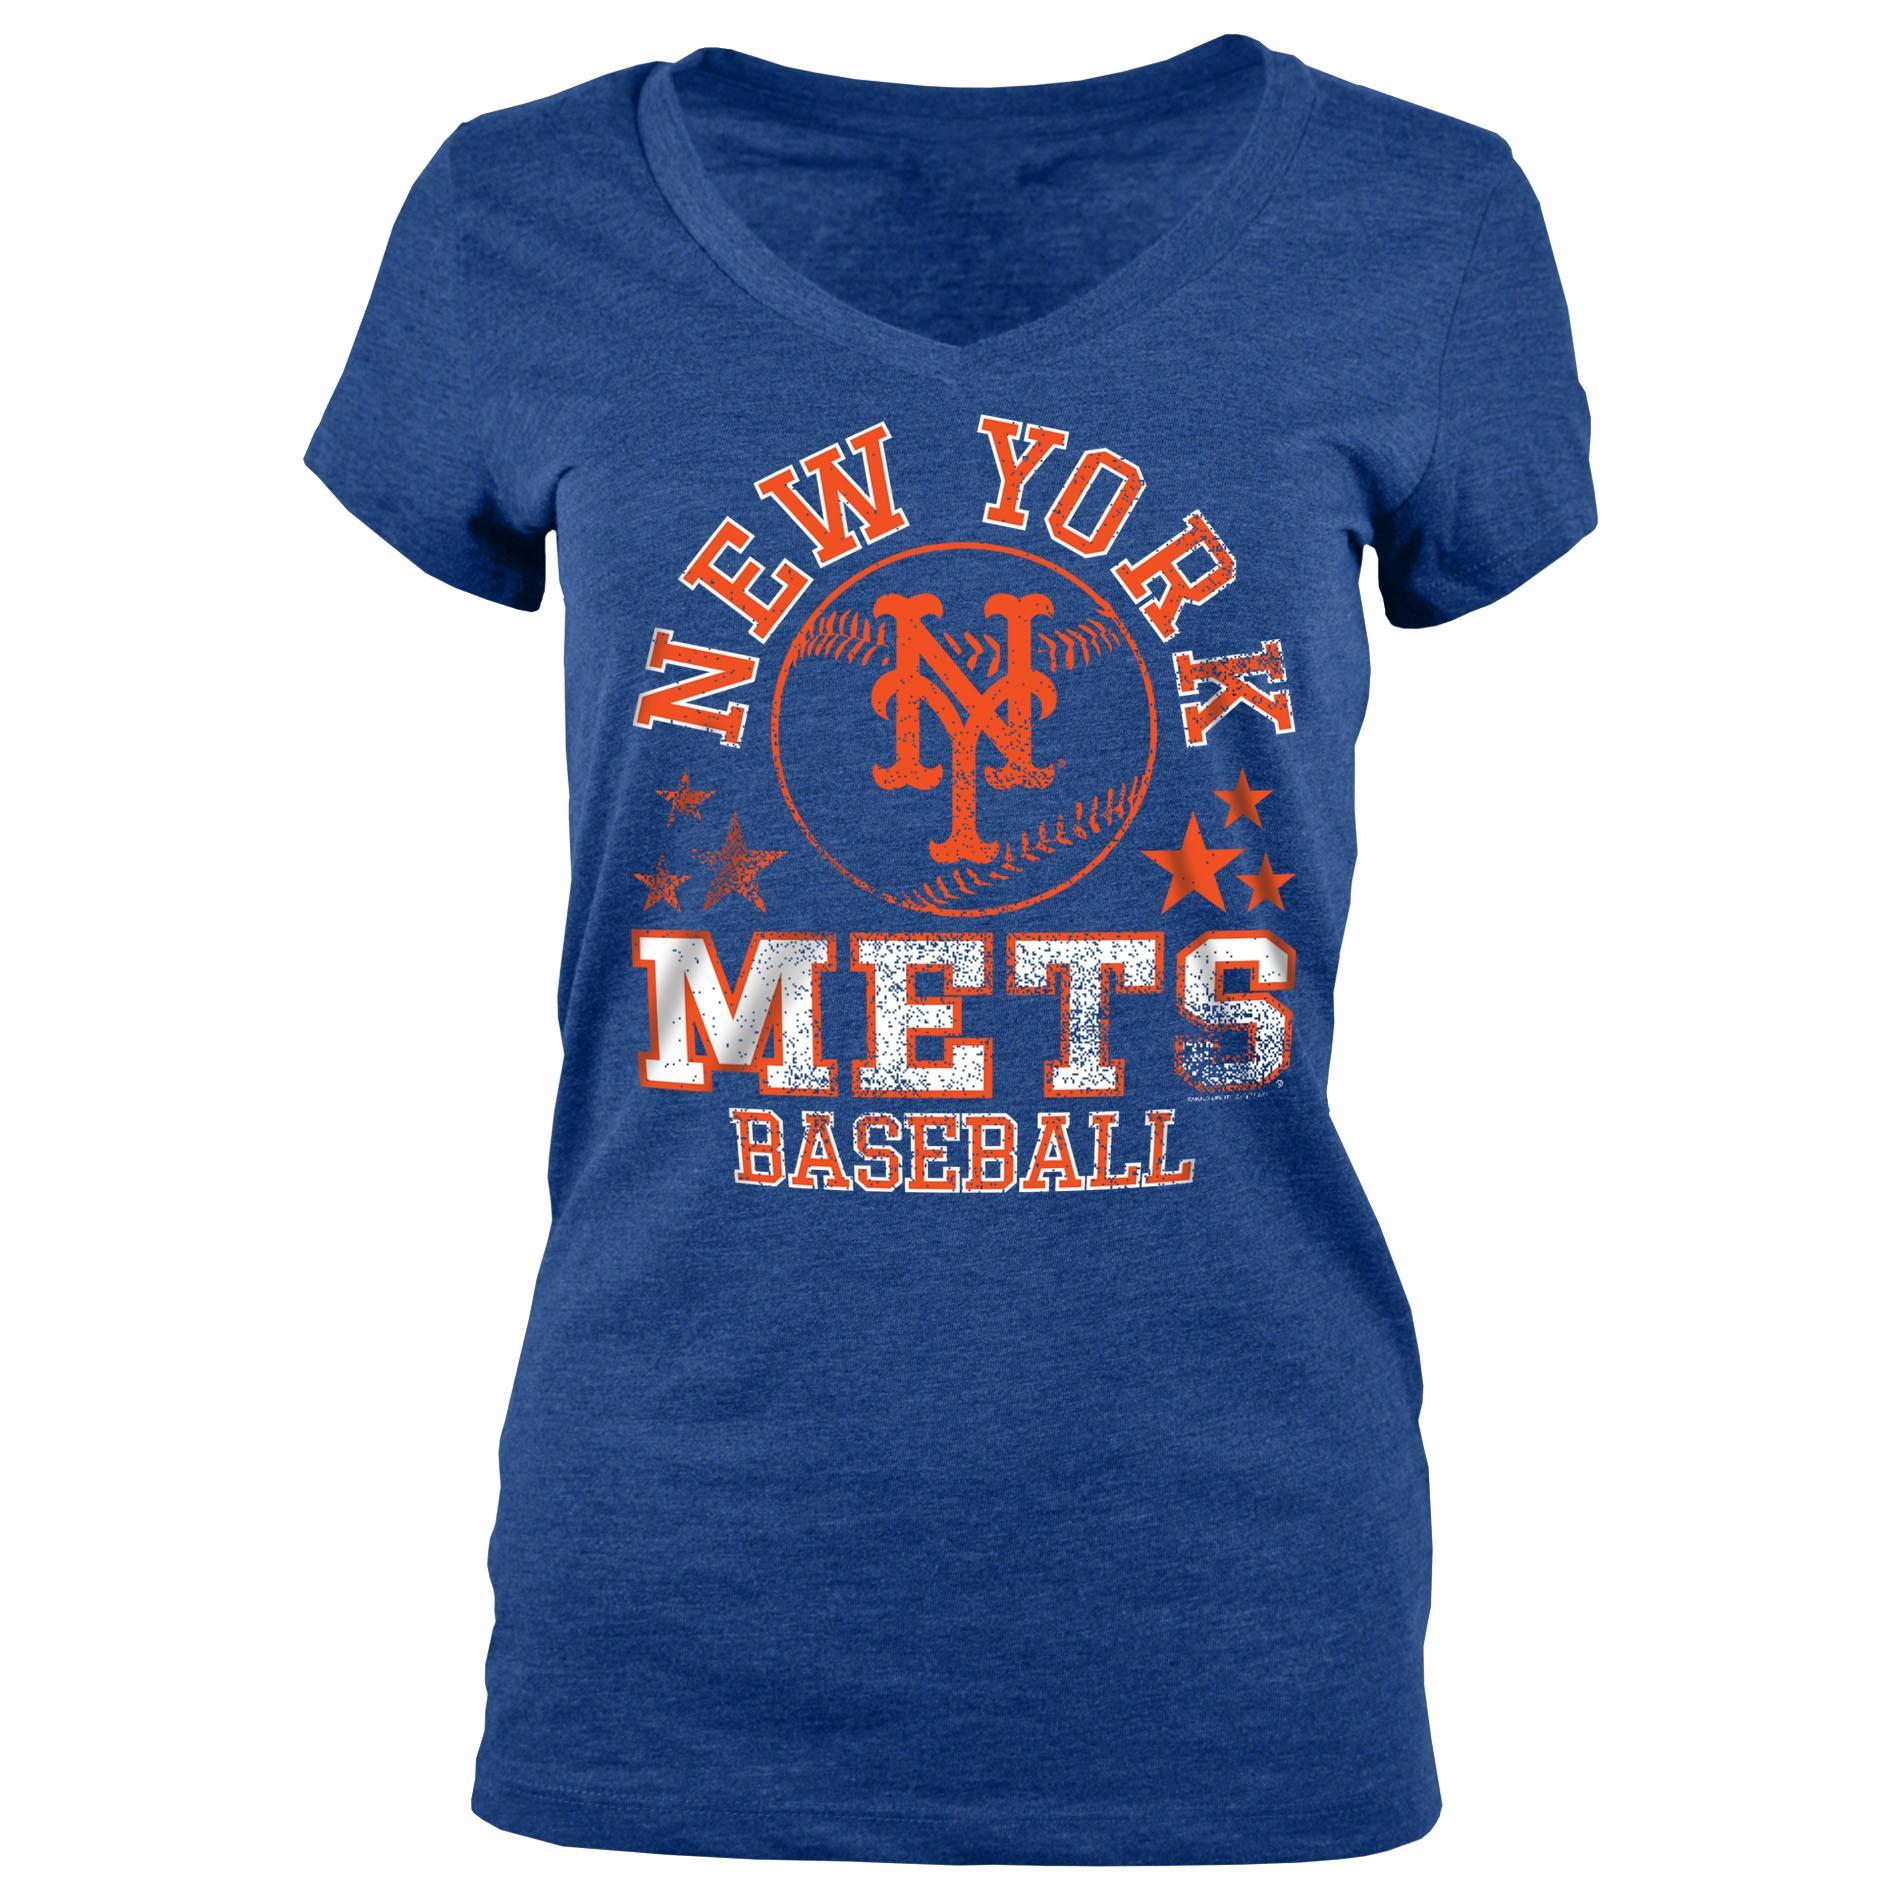 MLB Women's V-Neck T-Shirt - New York Mets